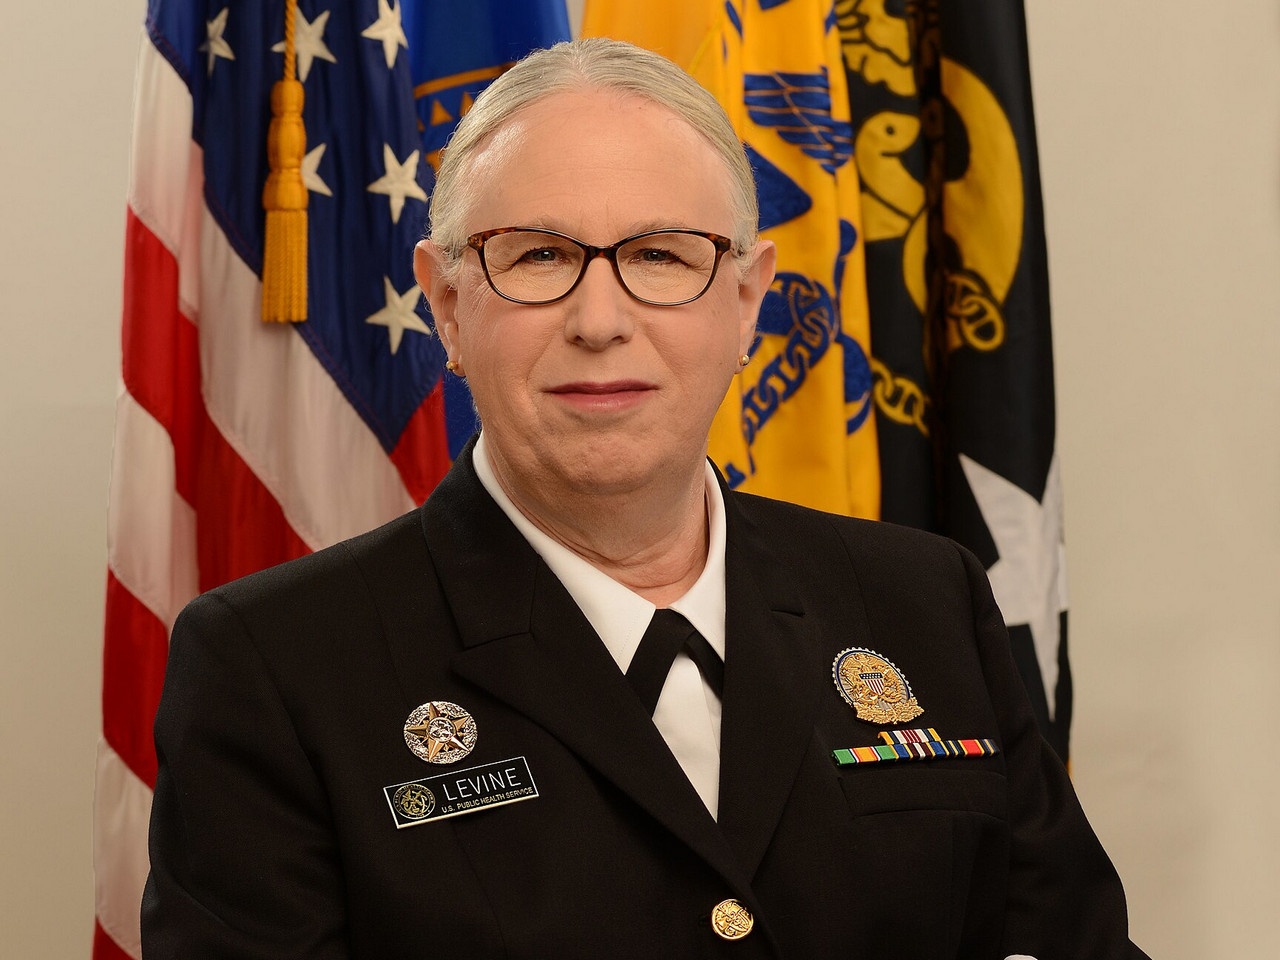 Рейчел (Ричард) Левин была утверждена Сенатом в звании адмирала Офицерского корпуса службы общественного здравоохранения США.